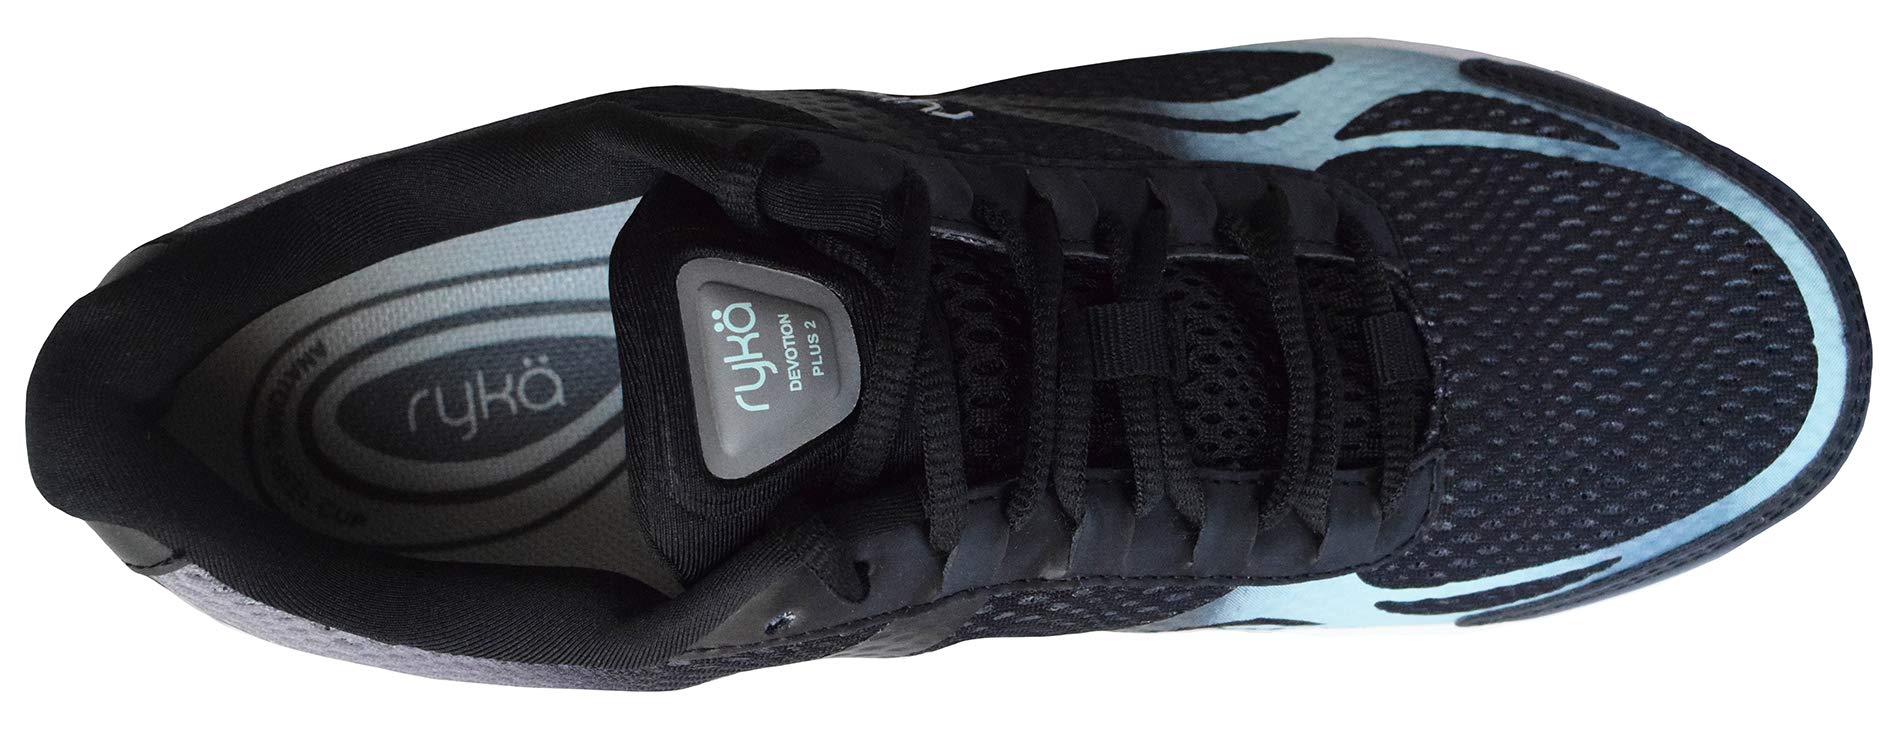 Ryka Women's Devotion Plus 2 Black/Mint Walking Shoe 6 M